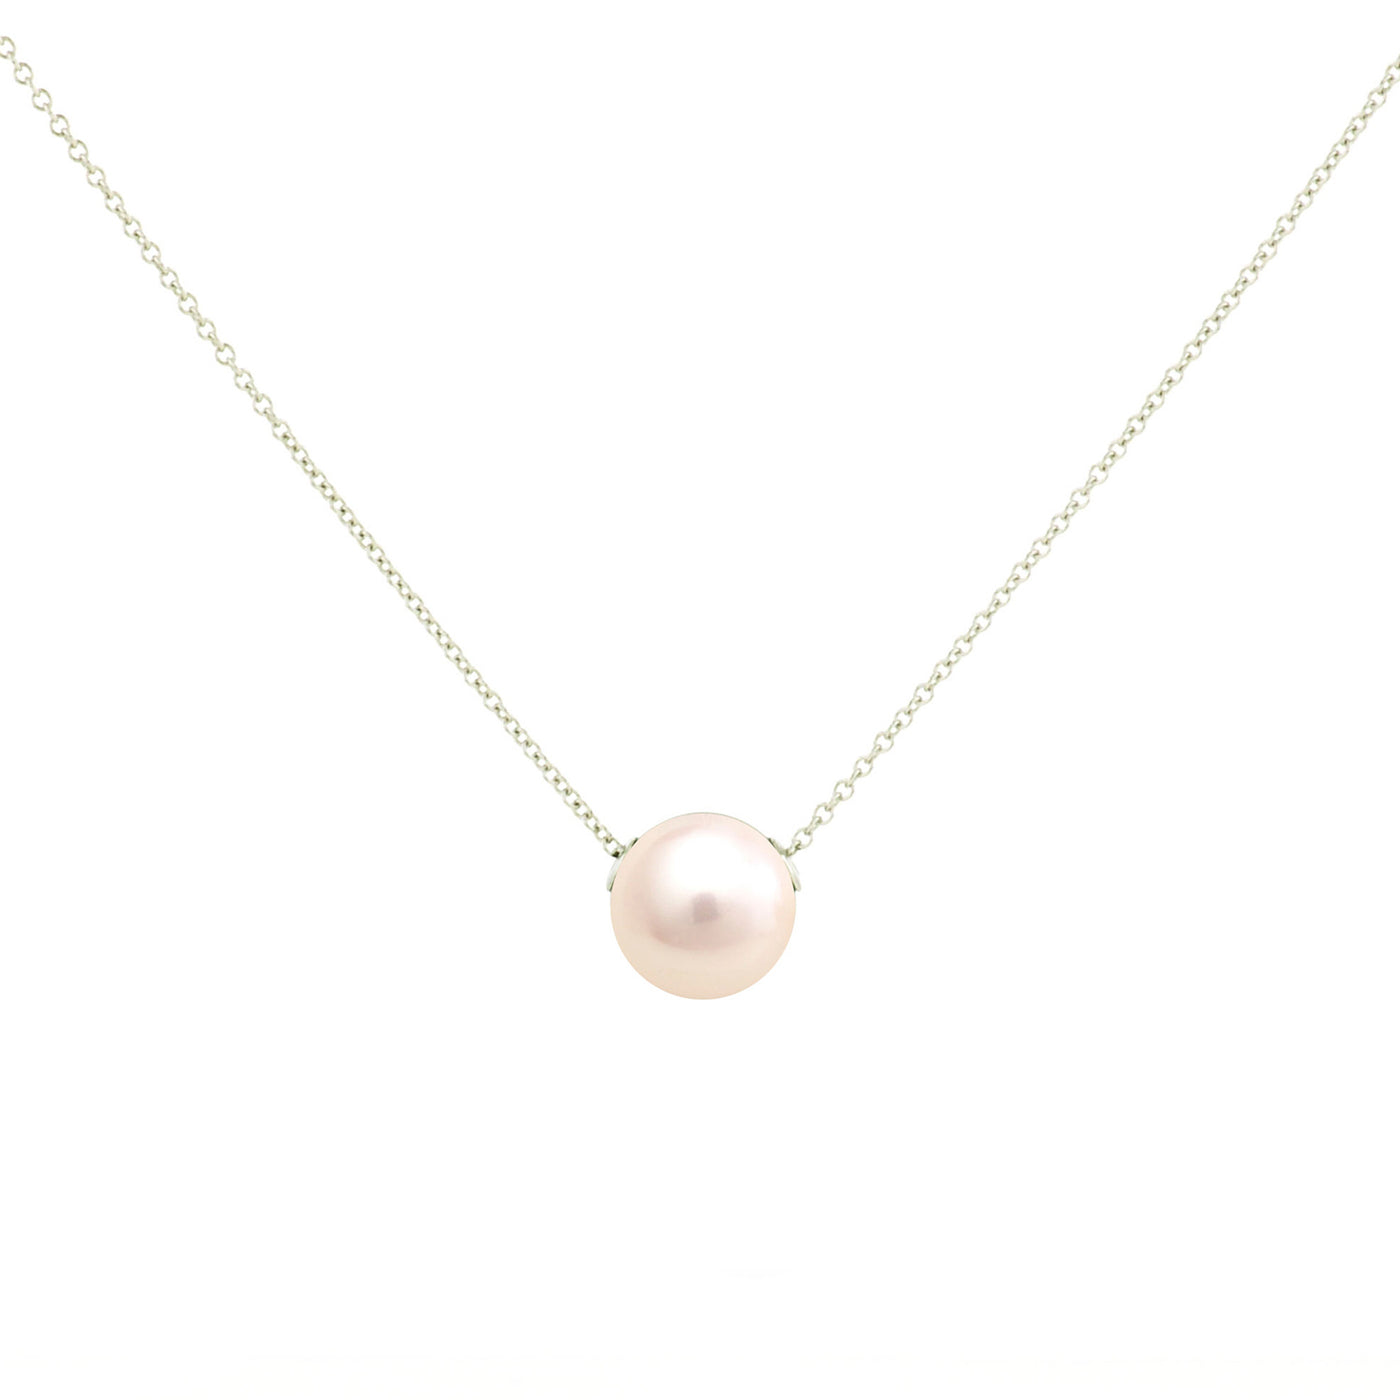 Denny Wong Designs 14k White Gold Pearl Pendant – PN-011W-F04